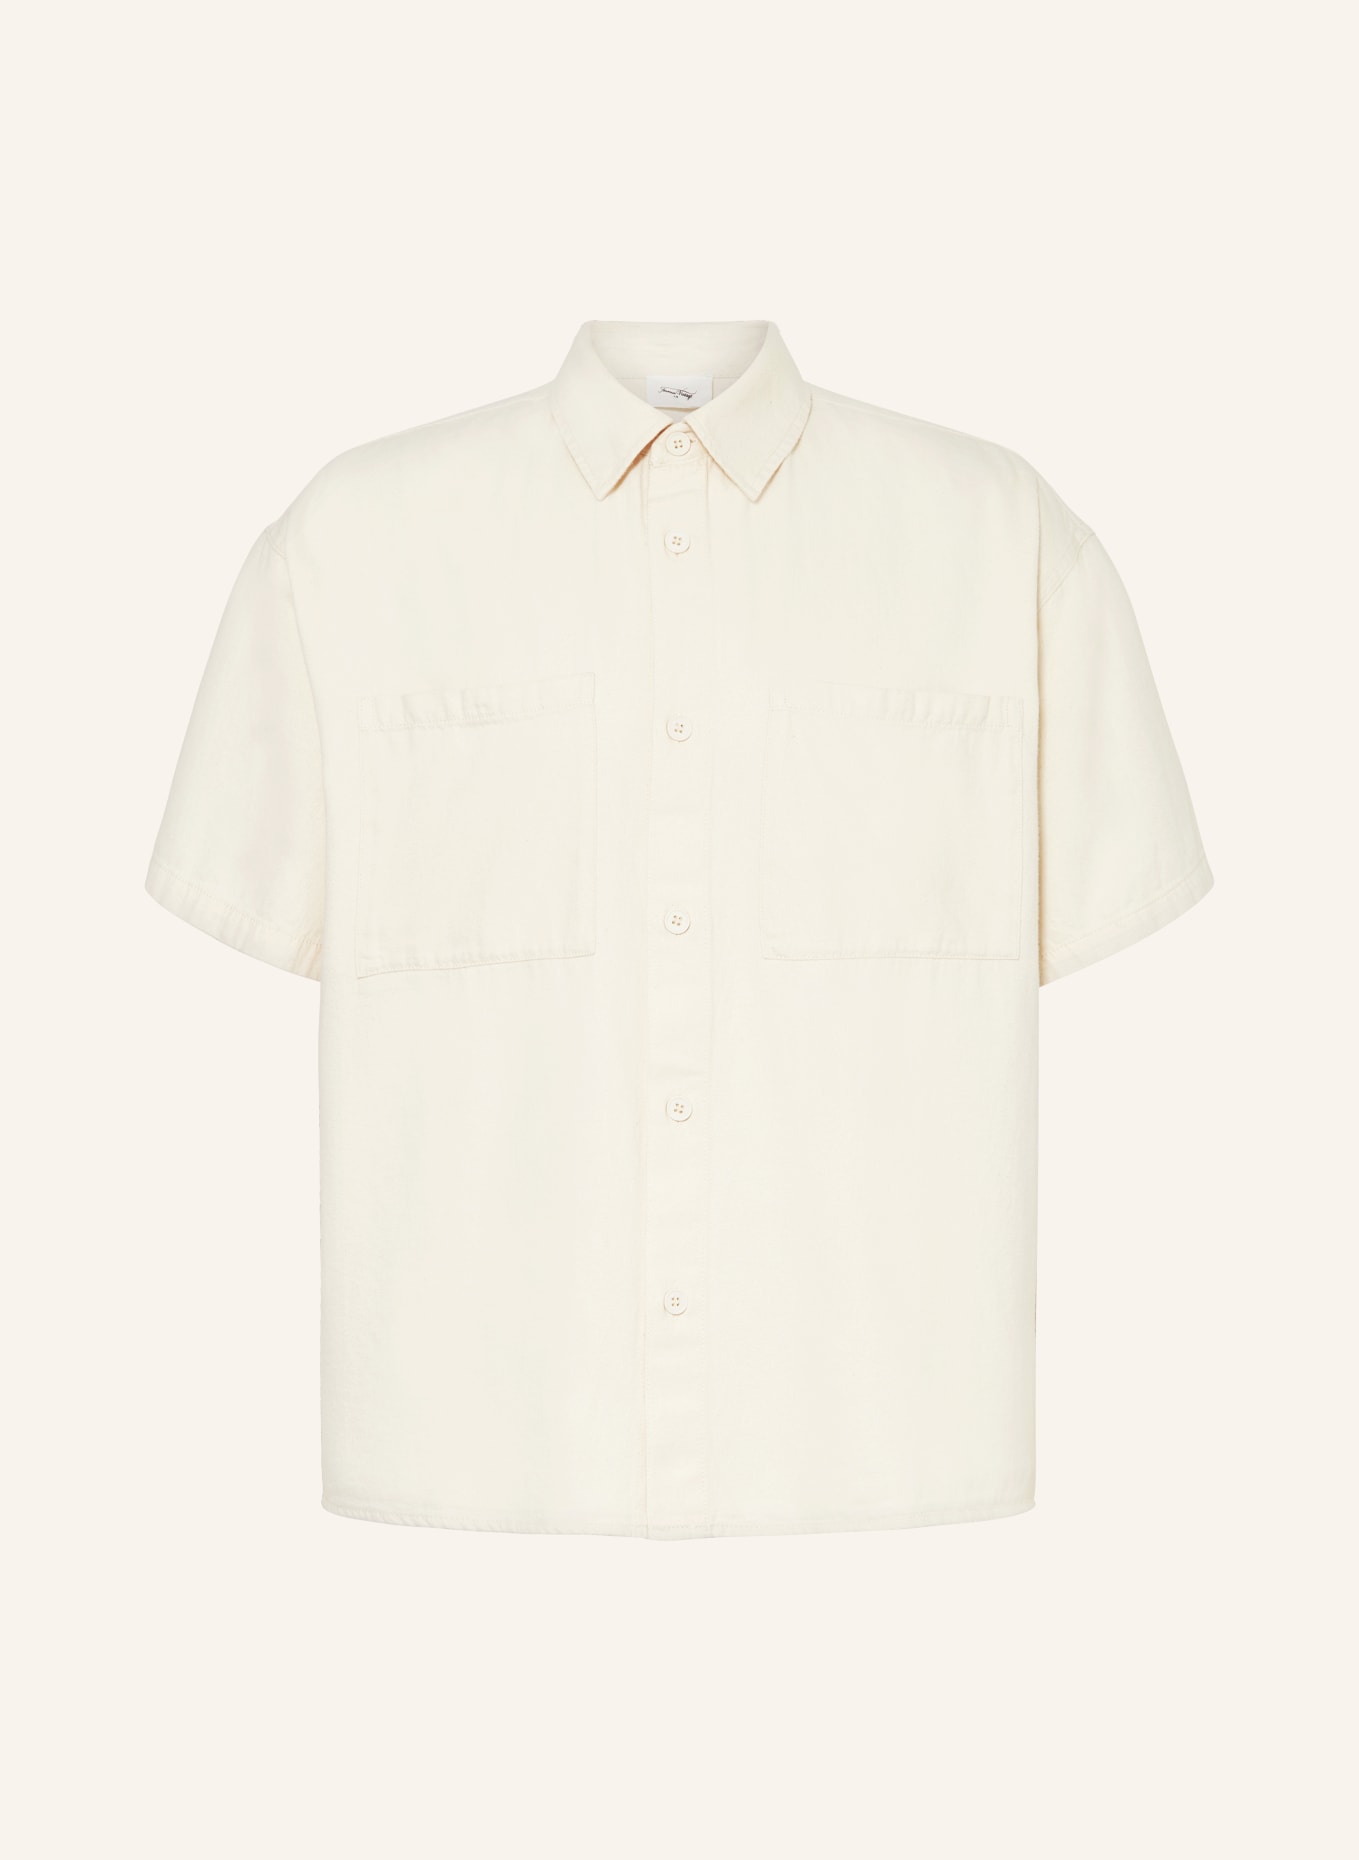 American Vintage Short sleeve shirt comfort fit, Color: ECRU (Image 1)